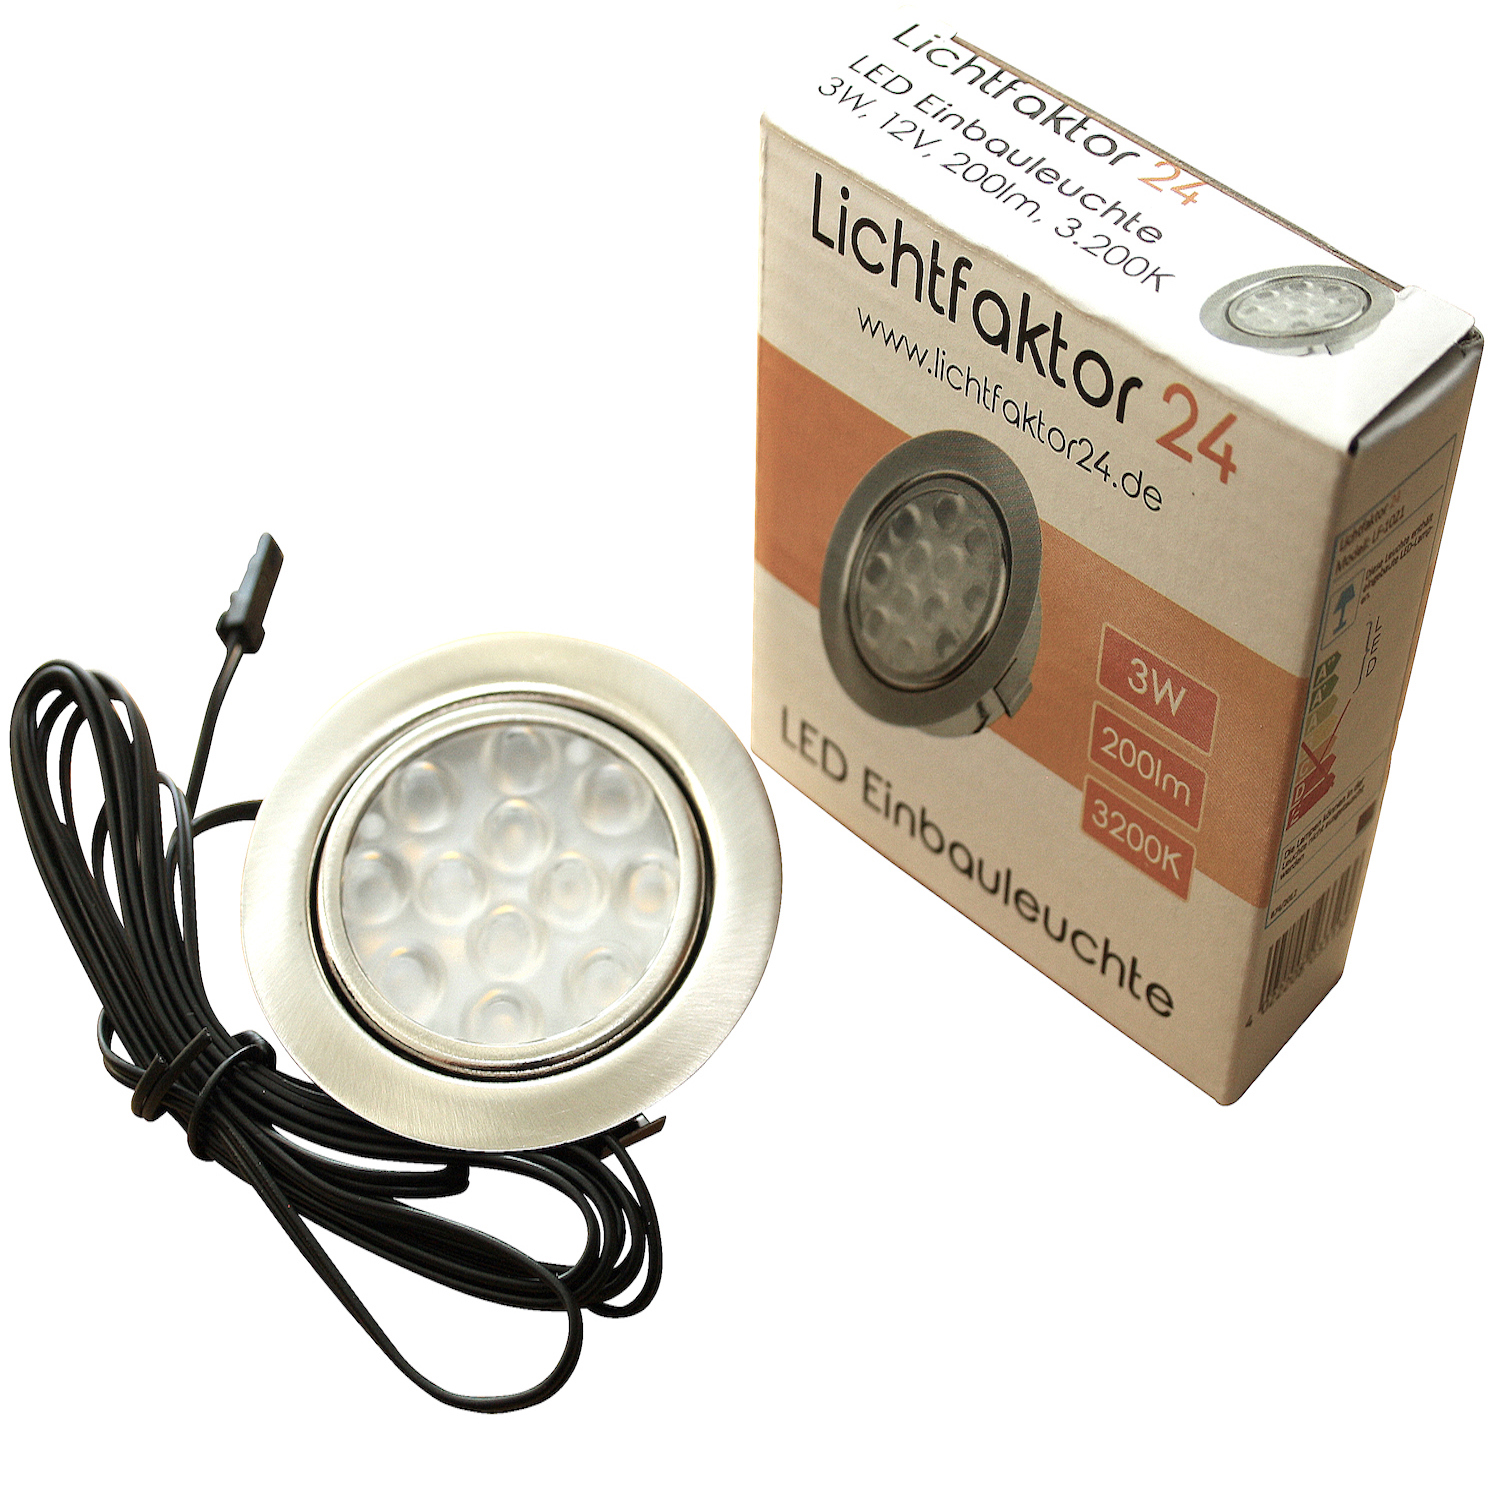 Flache LED Einbaustrahler mit sehr geringer Einbautiefe - Lichtfaktor24